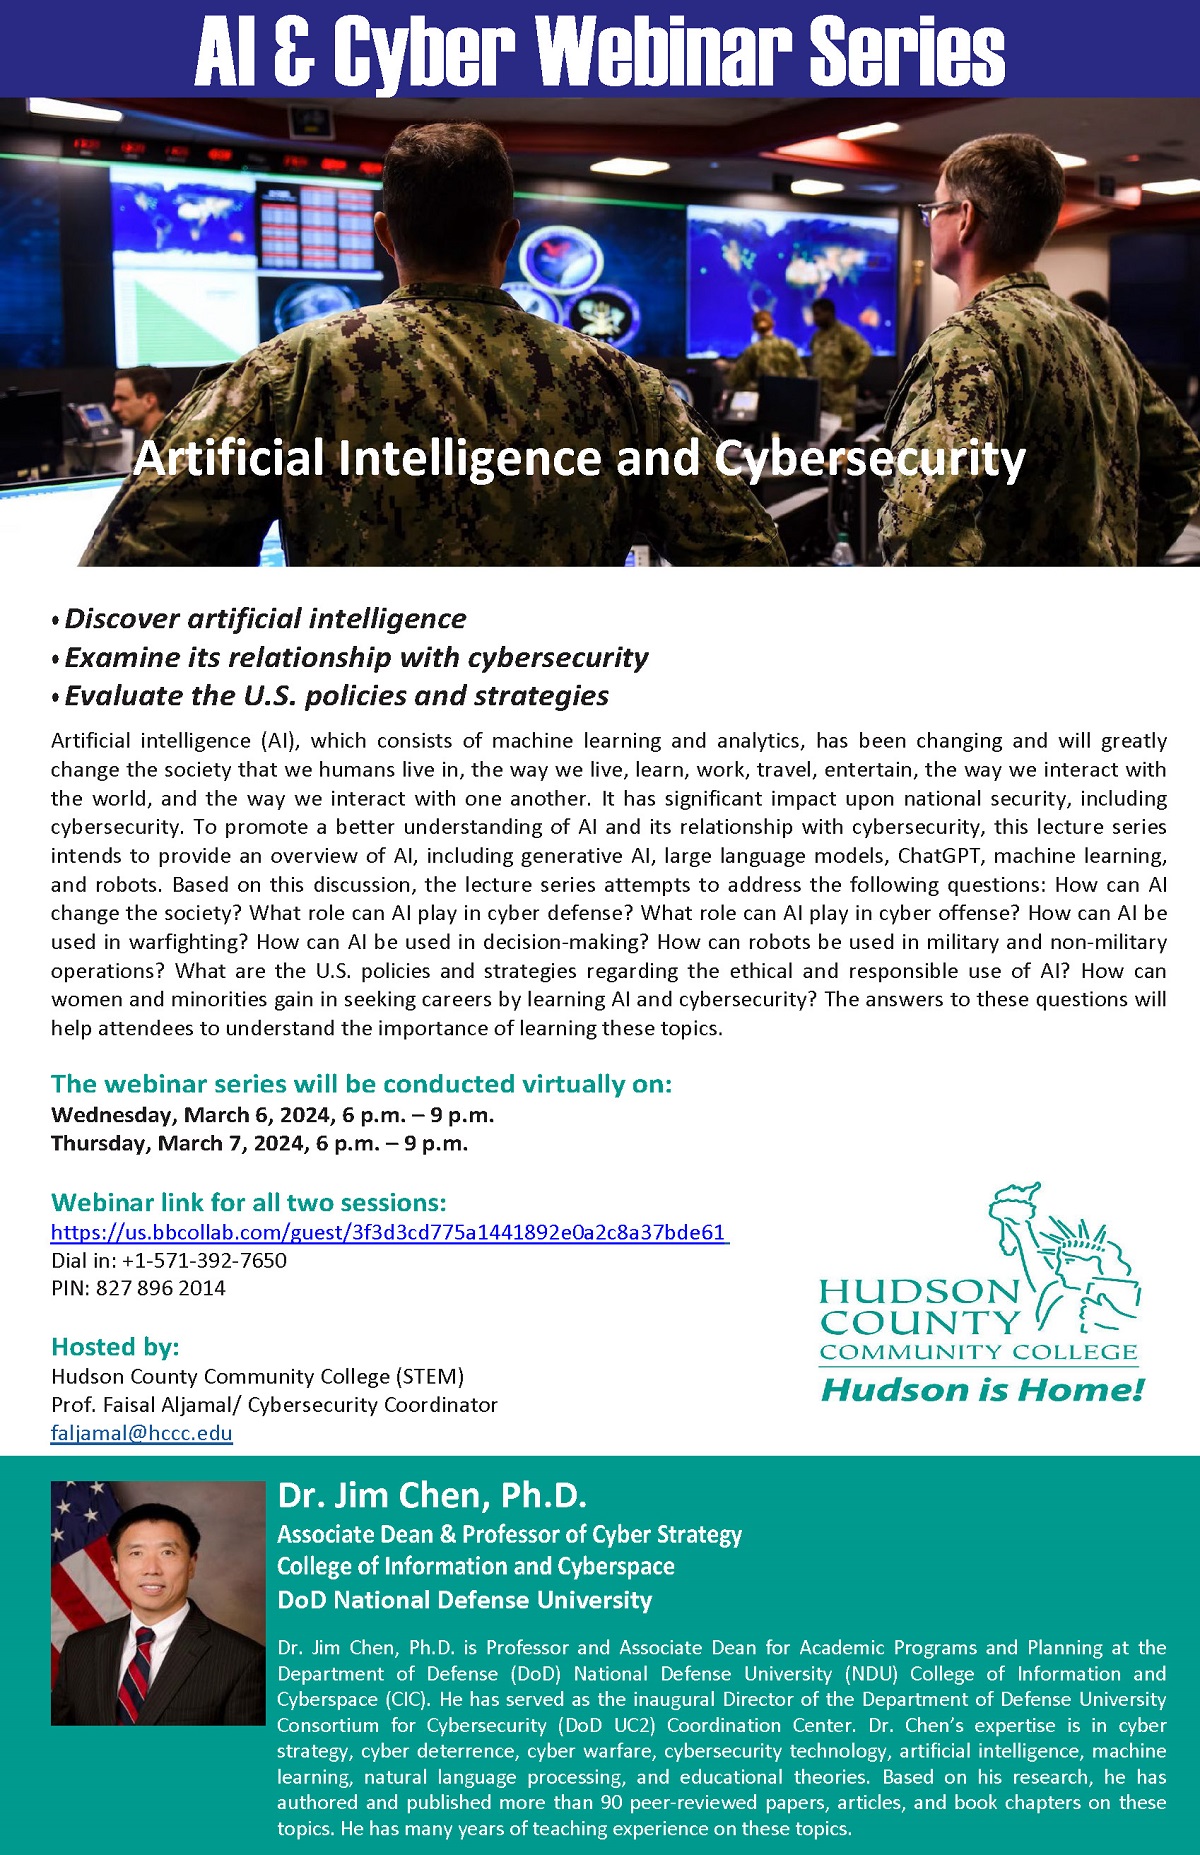 Serie de seminarios web sobre IA y cibernética